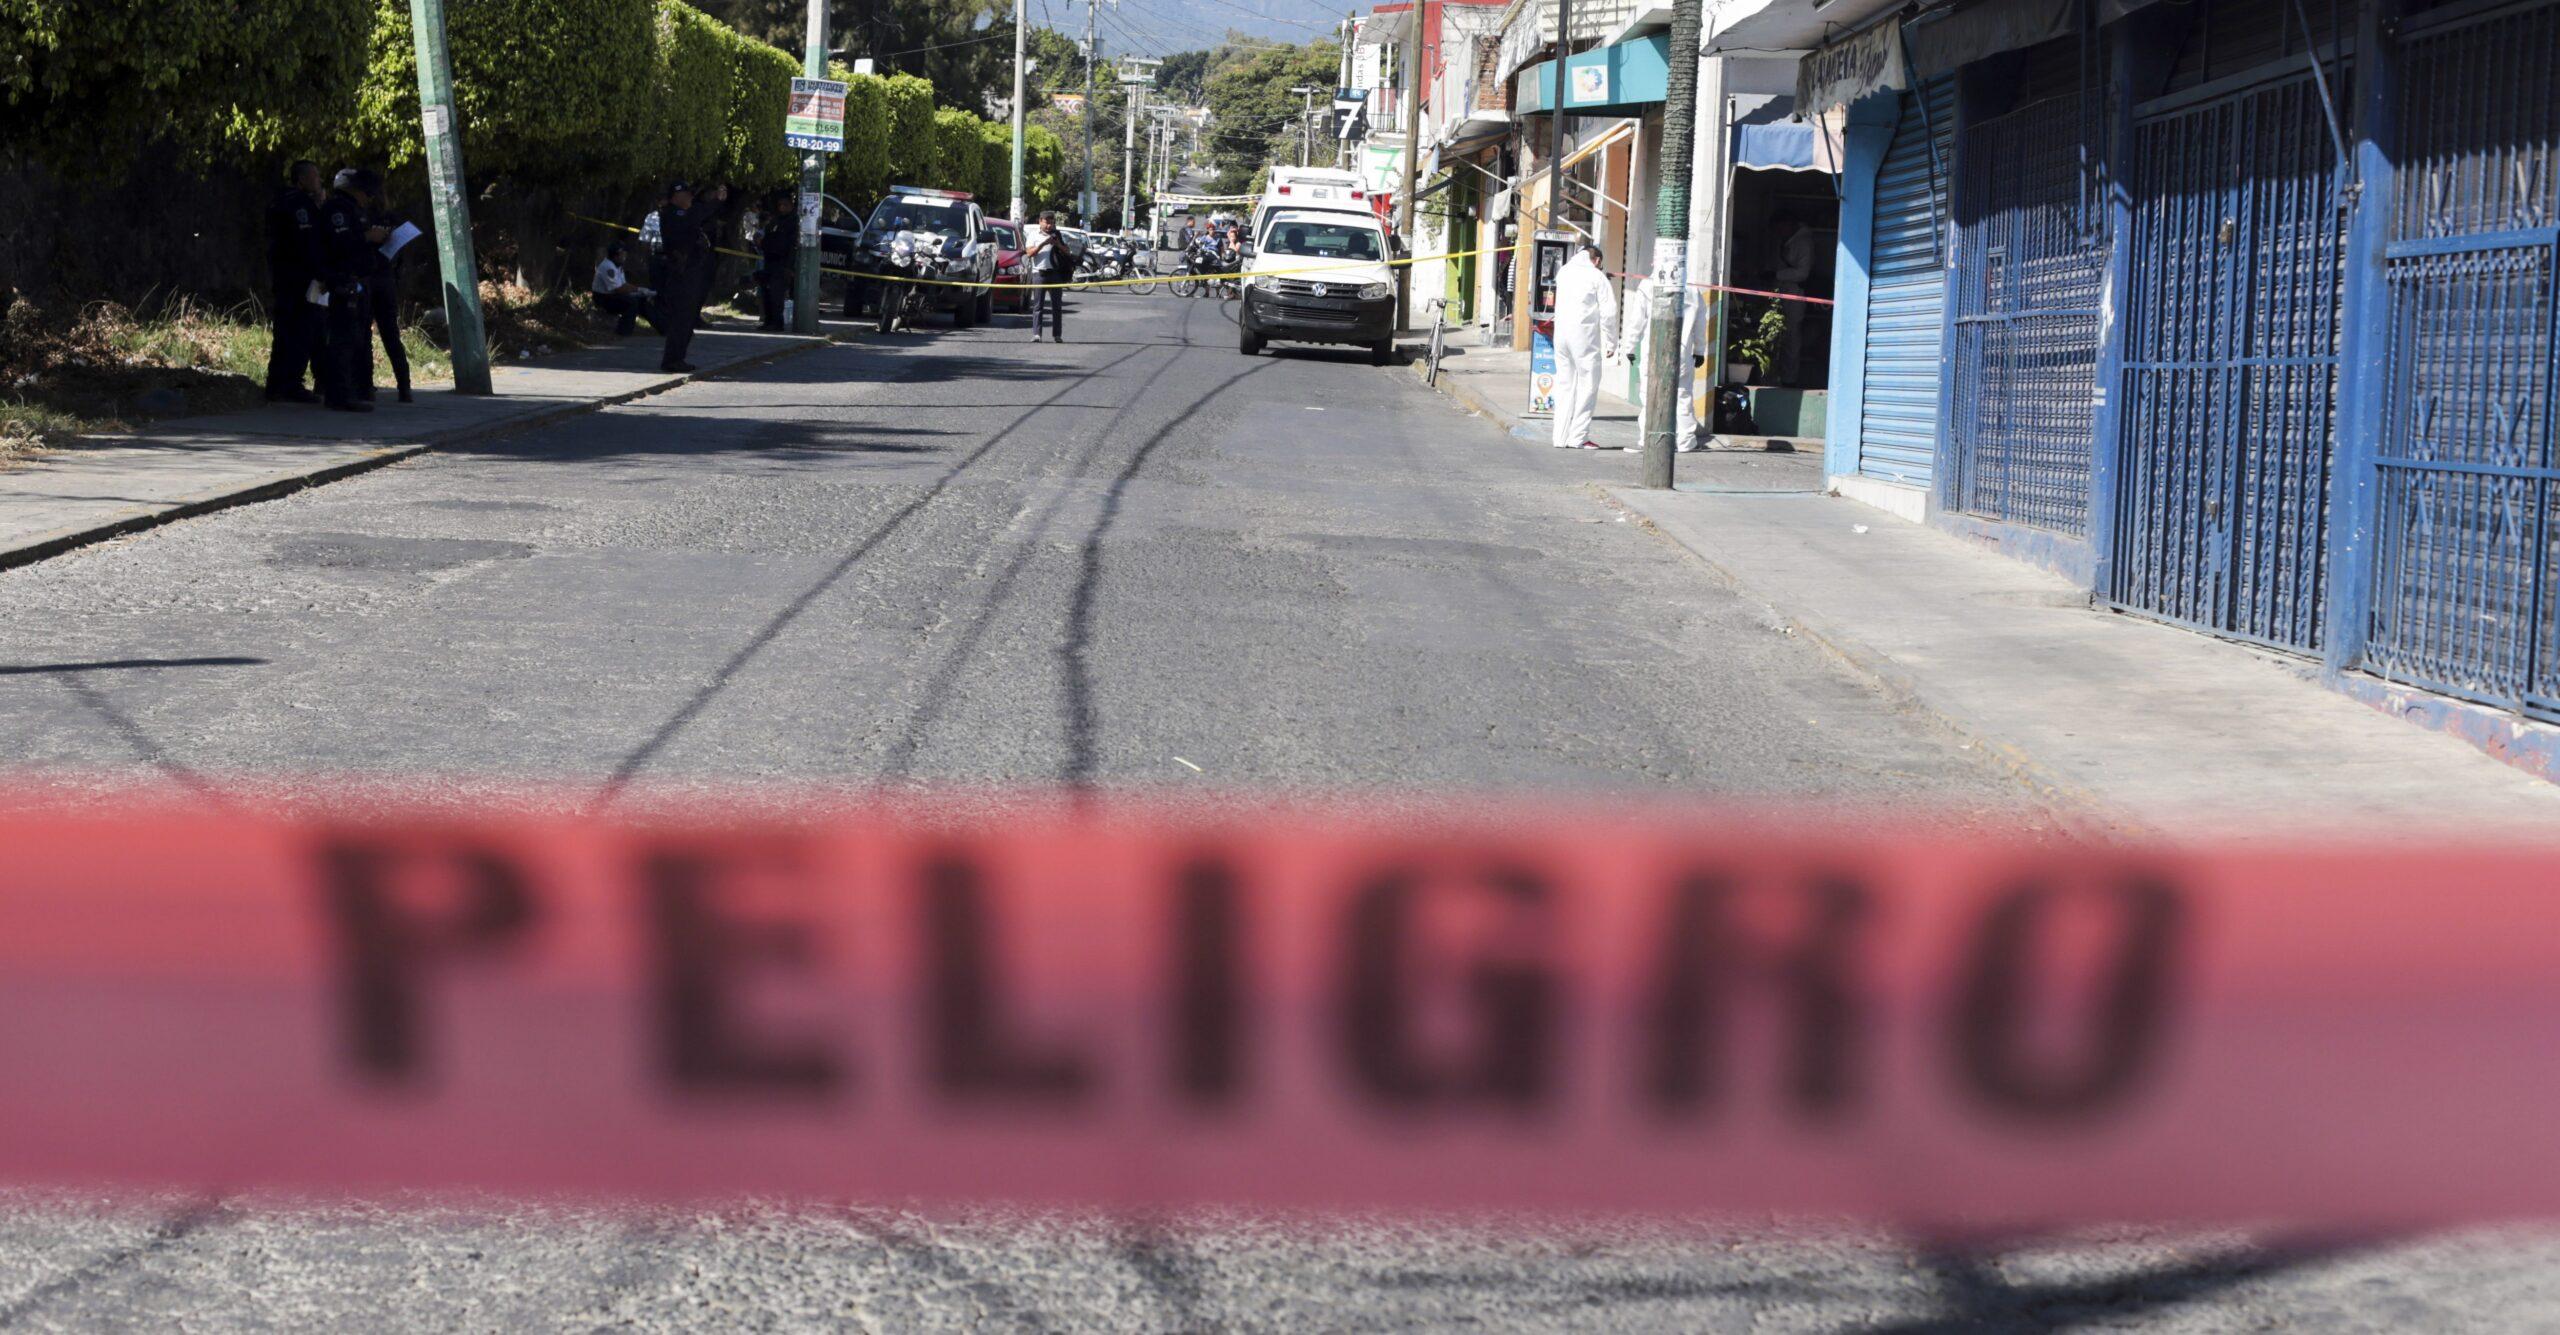 Homicidios aumentan 22% en 2016 respecto a 2015; Guerrero y Colima con la mayor tasa